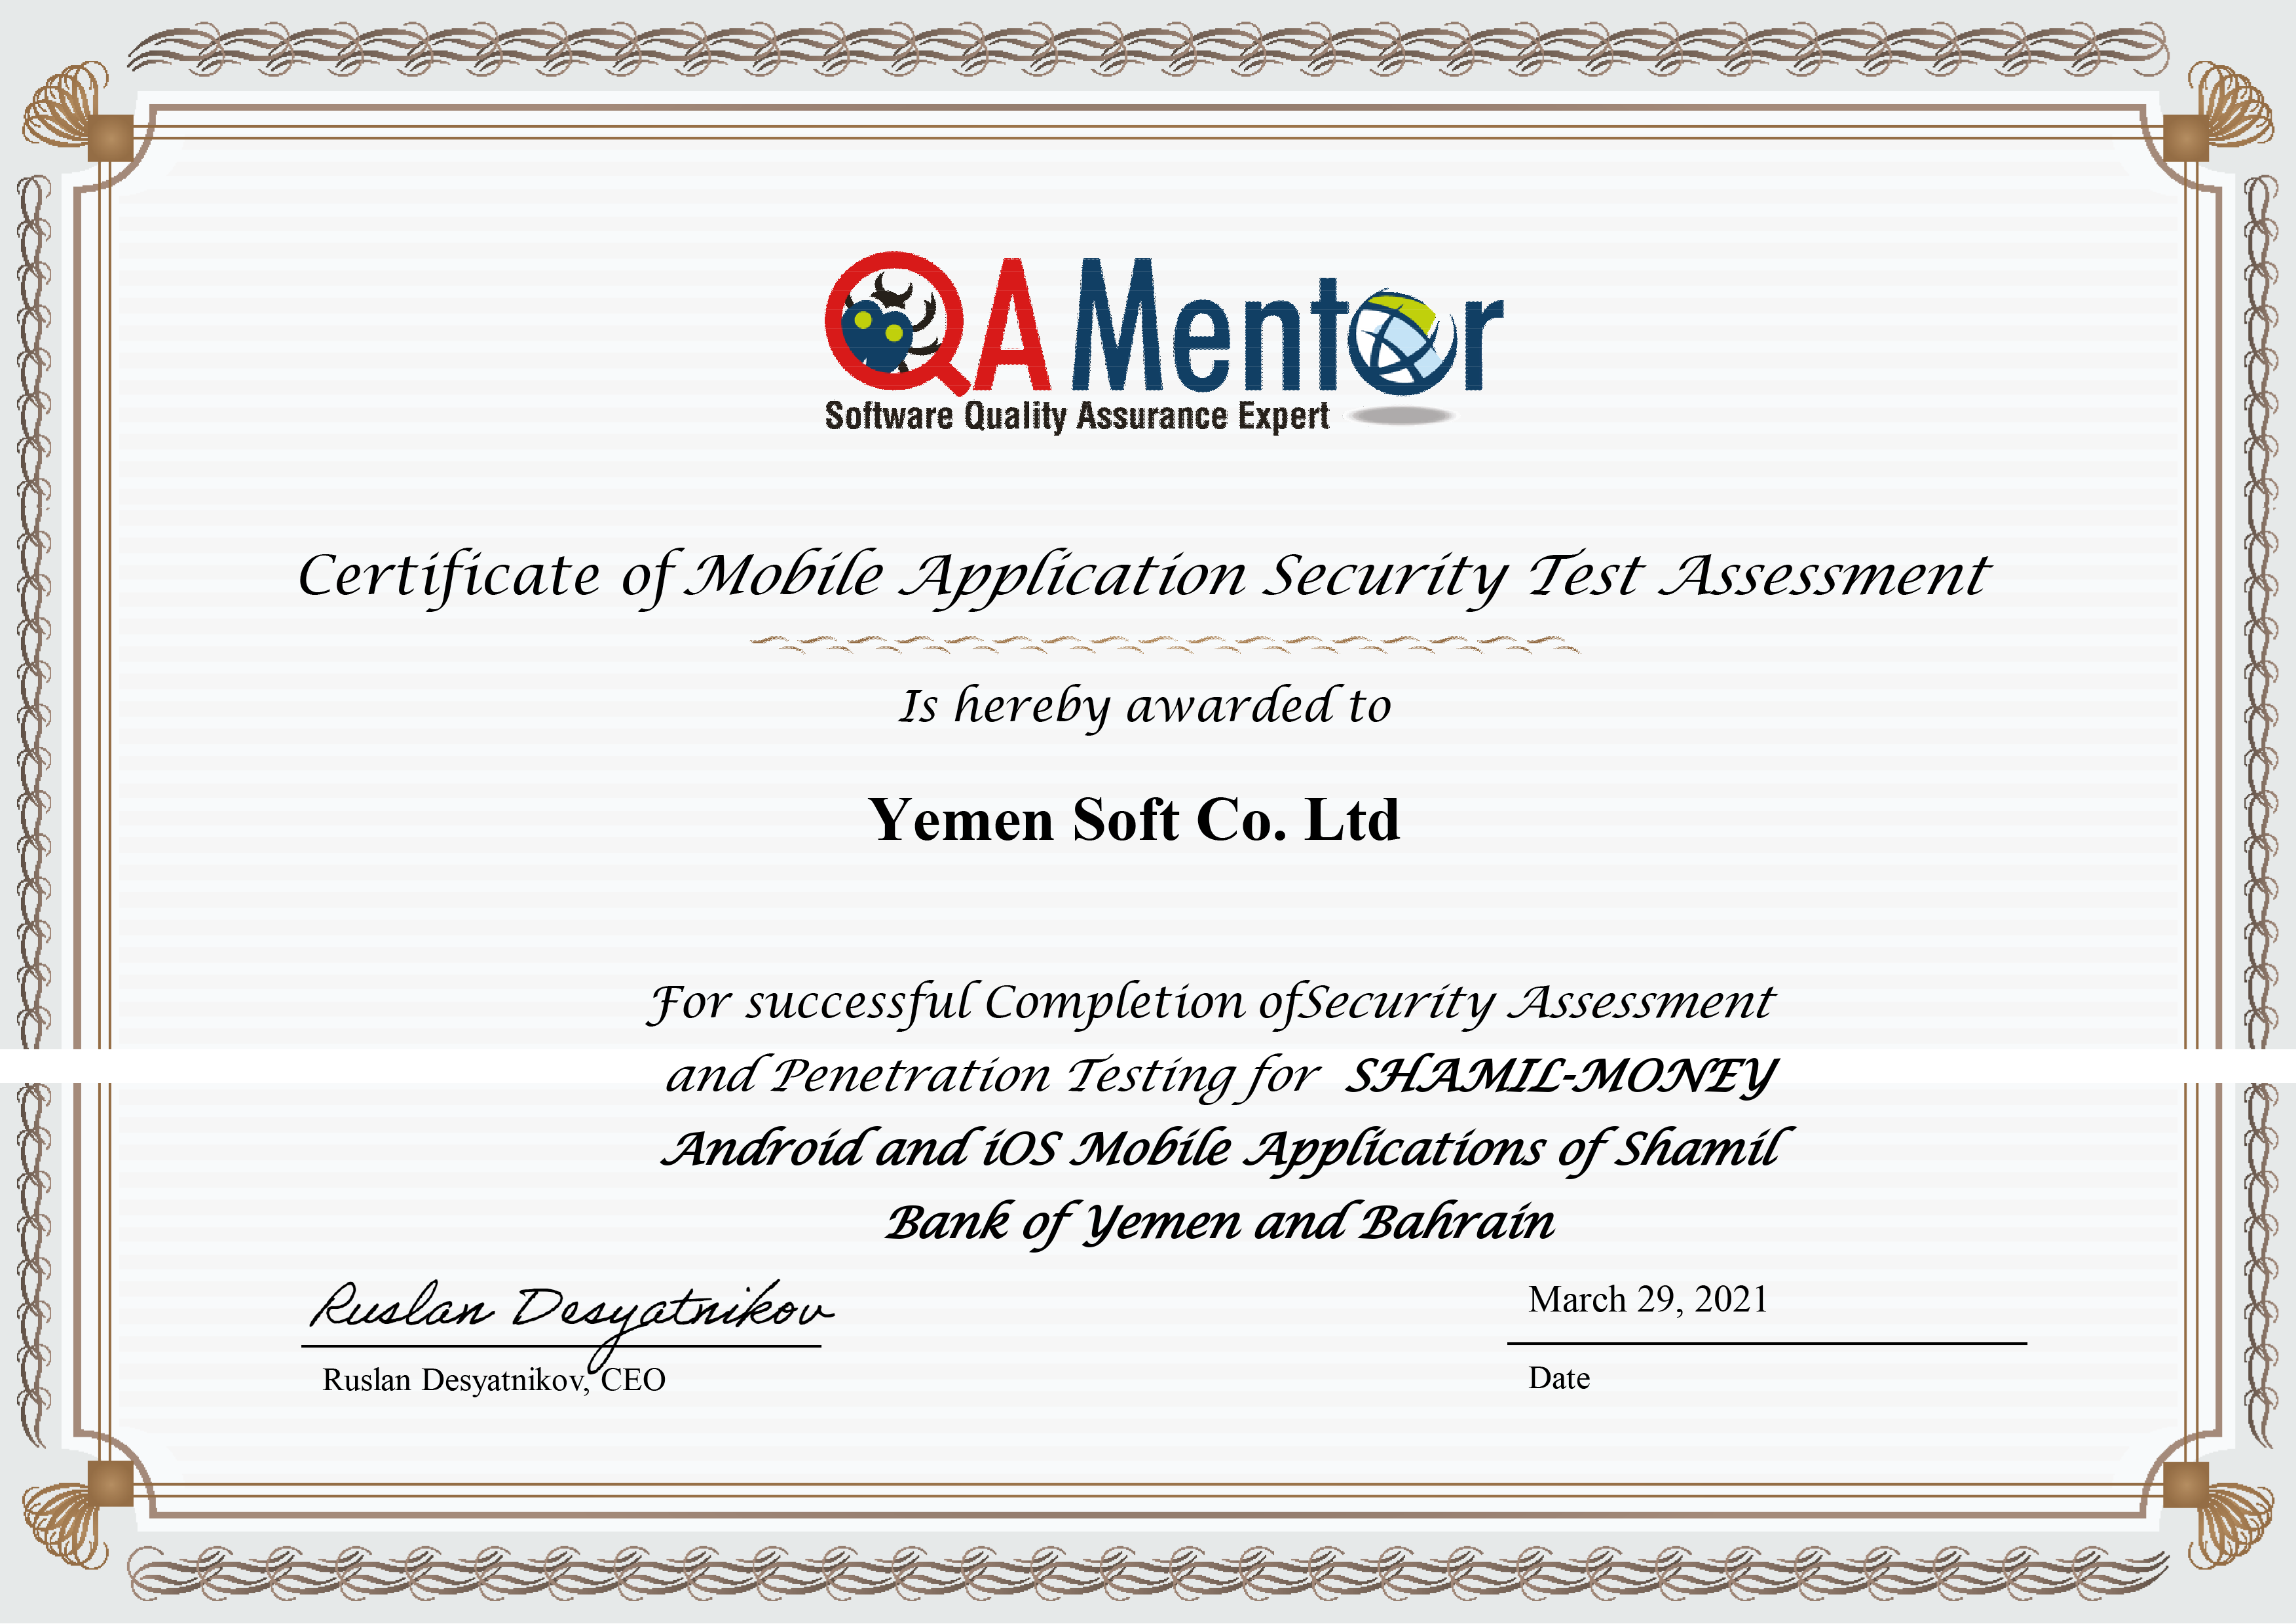 حصلت شركة يمن سوفت على شهادة الثقة لأمان وسرية تطبيقاتها للموبايل بعد التقييم الذي قامت به شركة QA Mentor العالمية لمحفظة الشركة الإلكترونية Ultimate E-Wallet في بنك اليمن البحرين الشامل